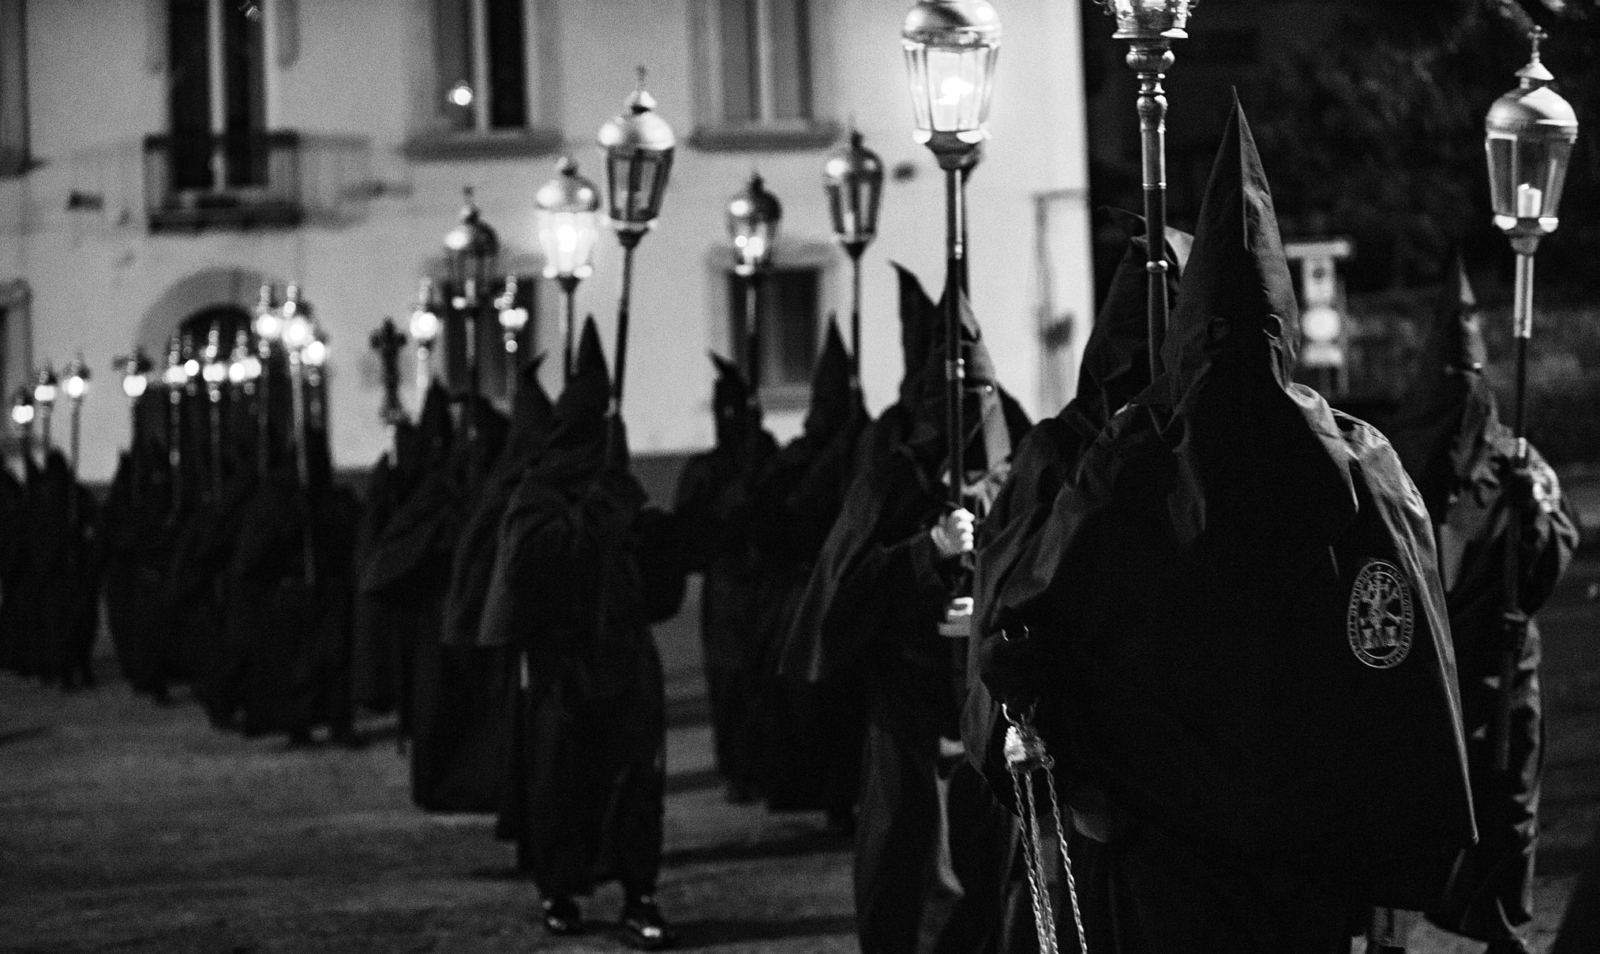 the black procession